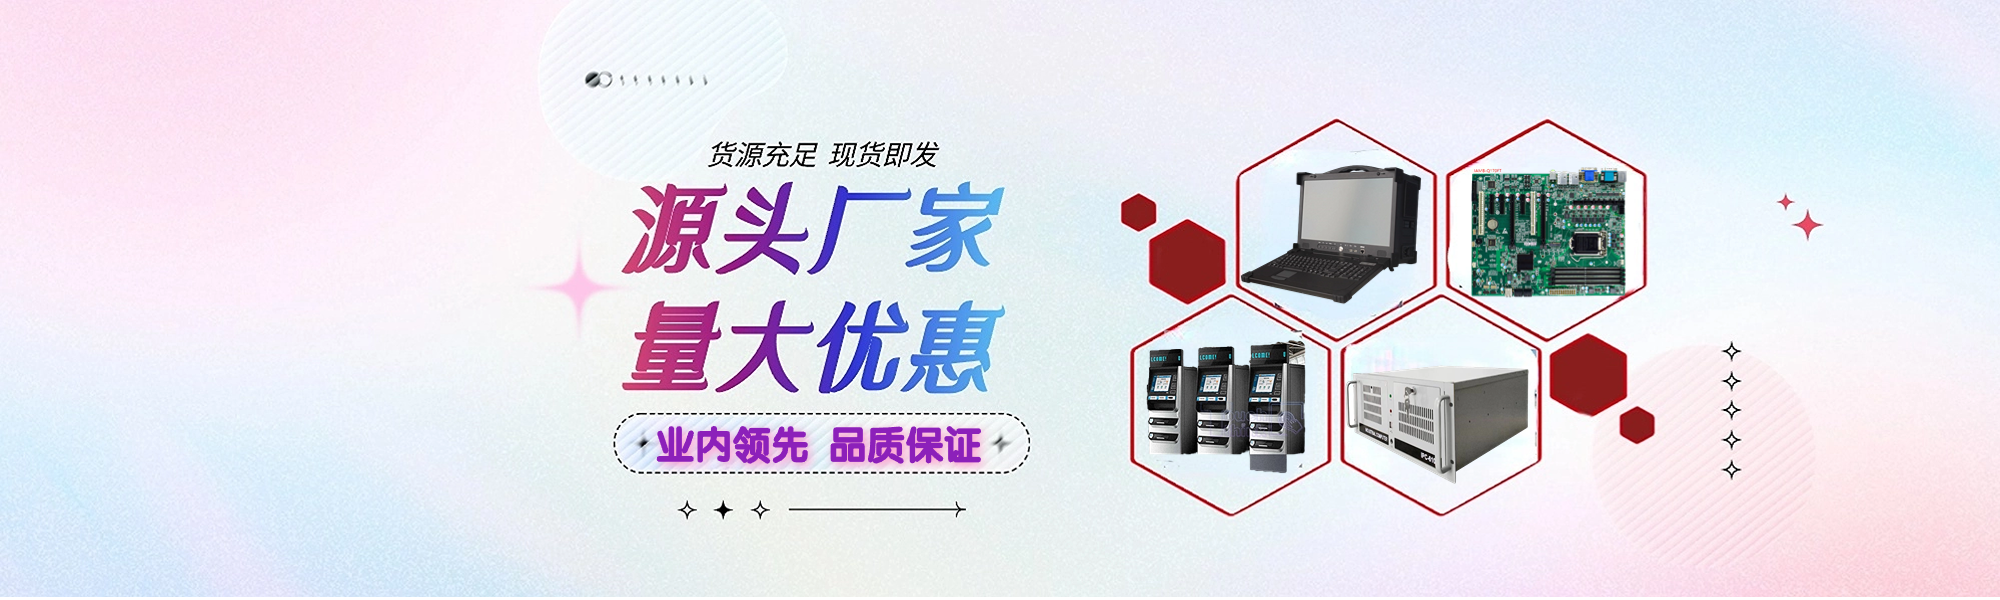 枭杰信息科技(上海)有限公司